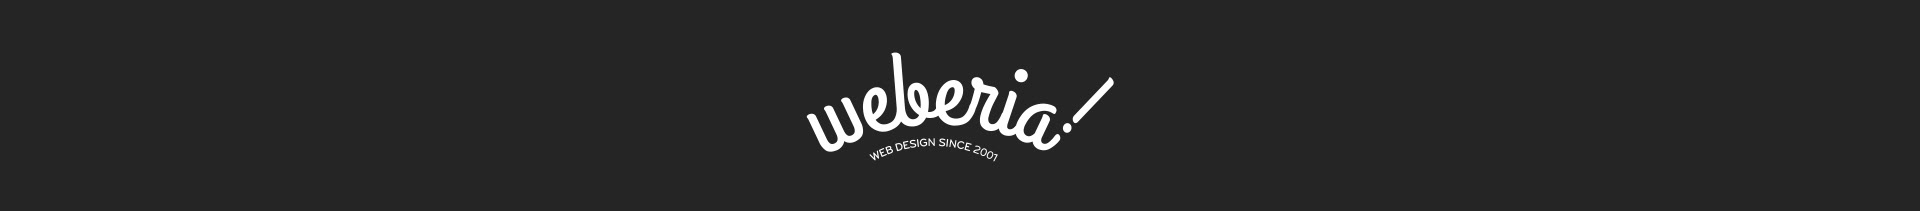 Weberia Design's profile banner